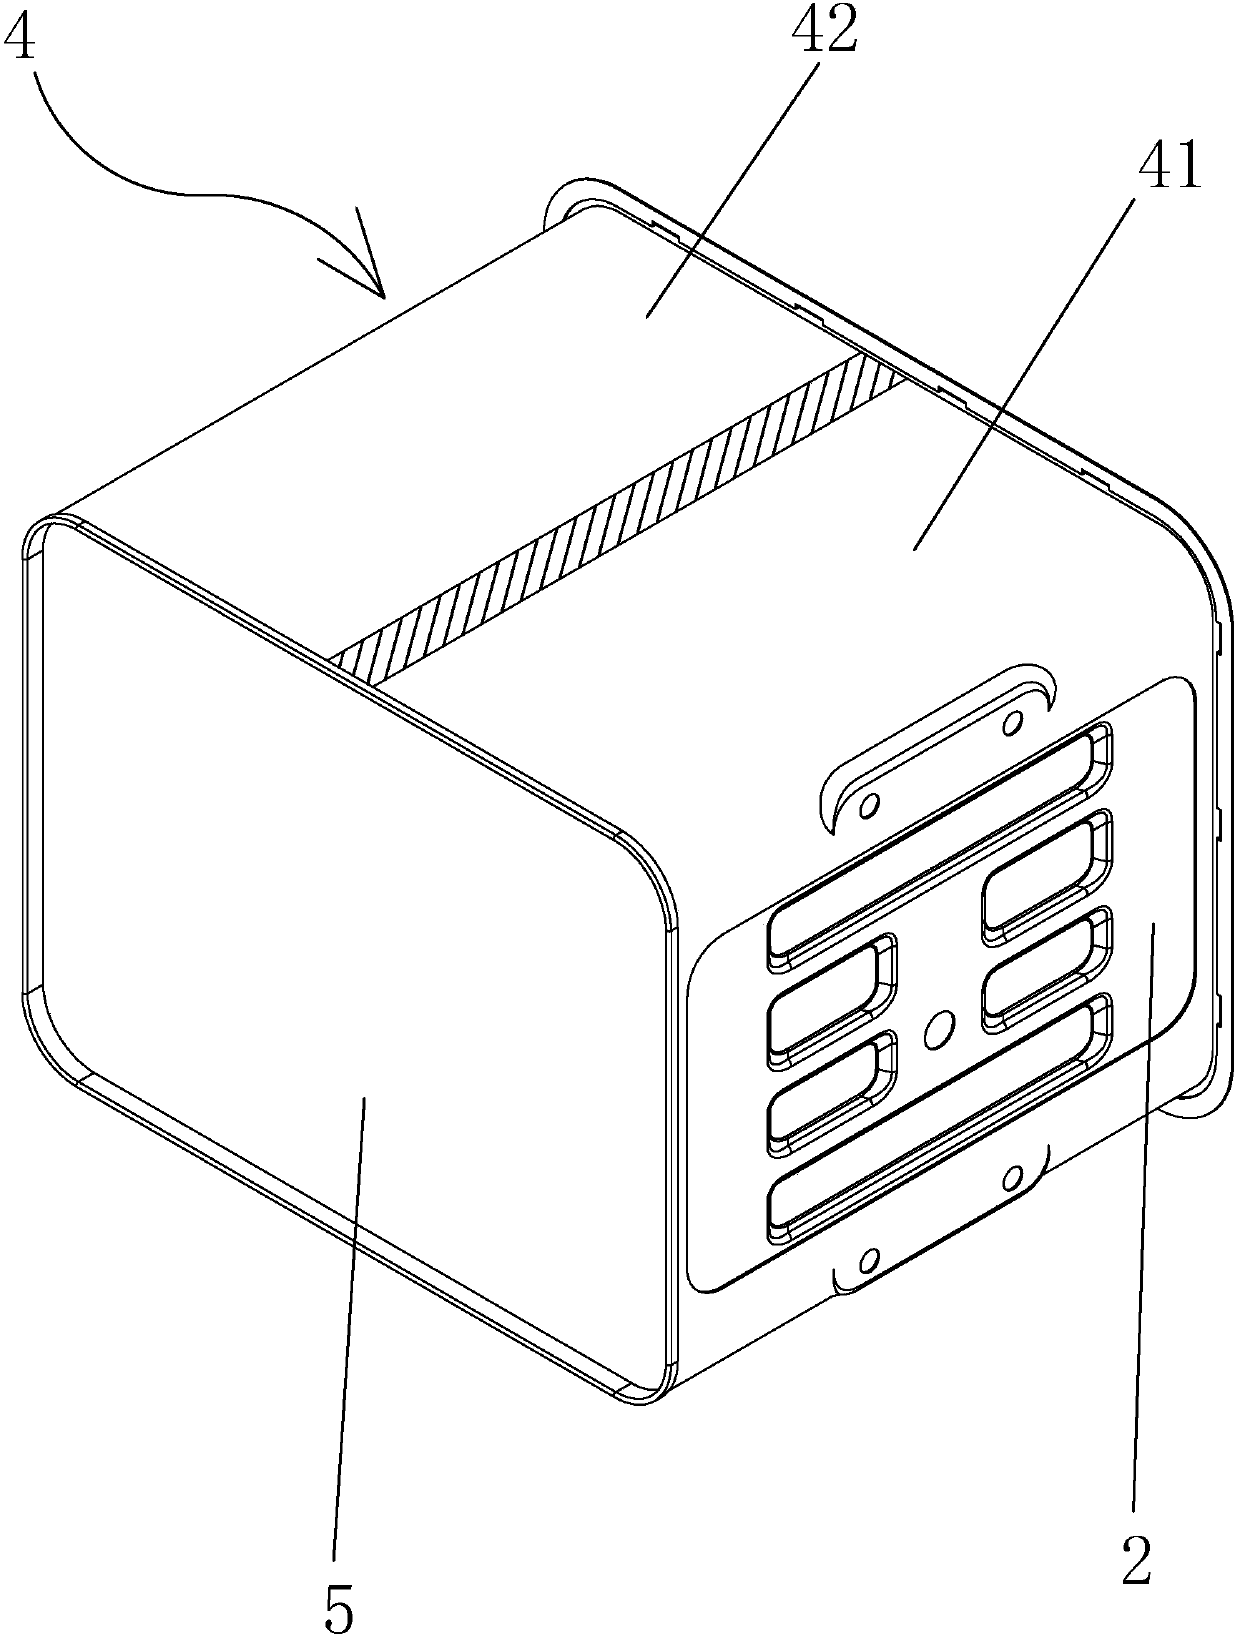 Novel oven inner container